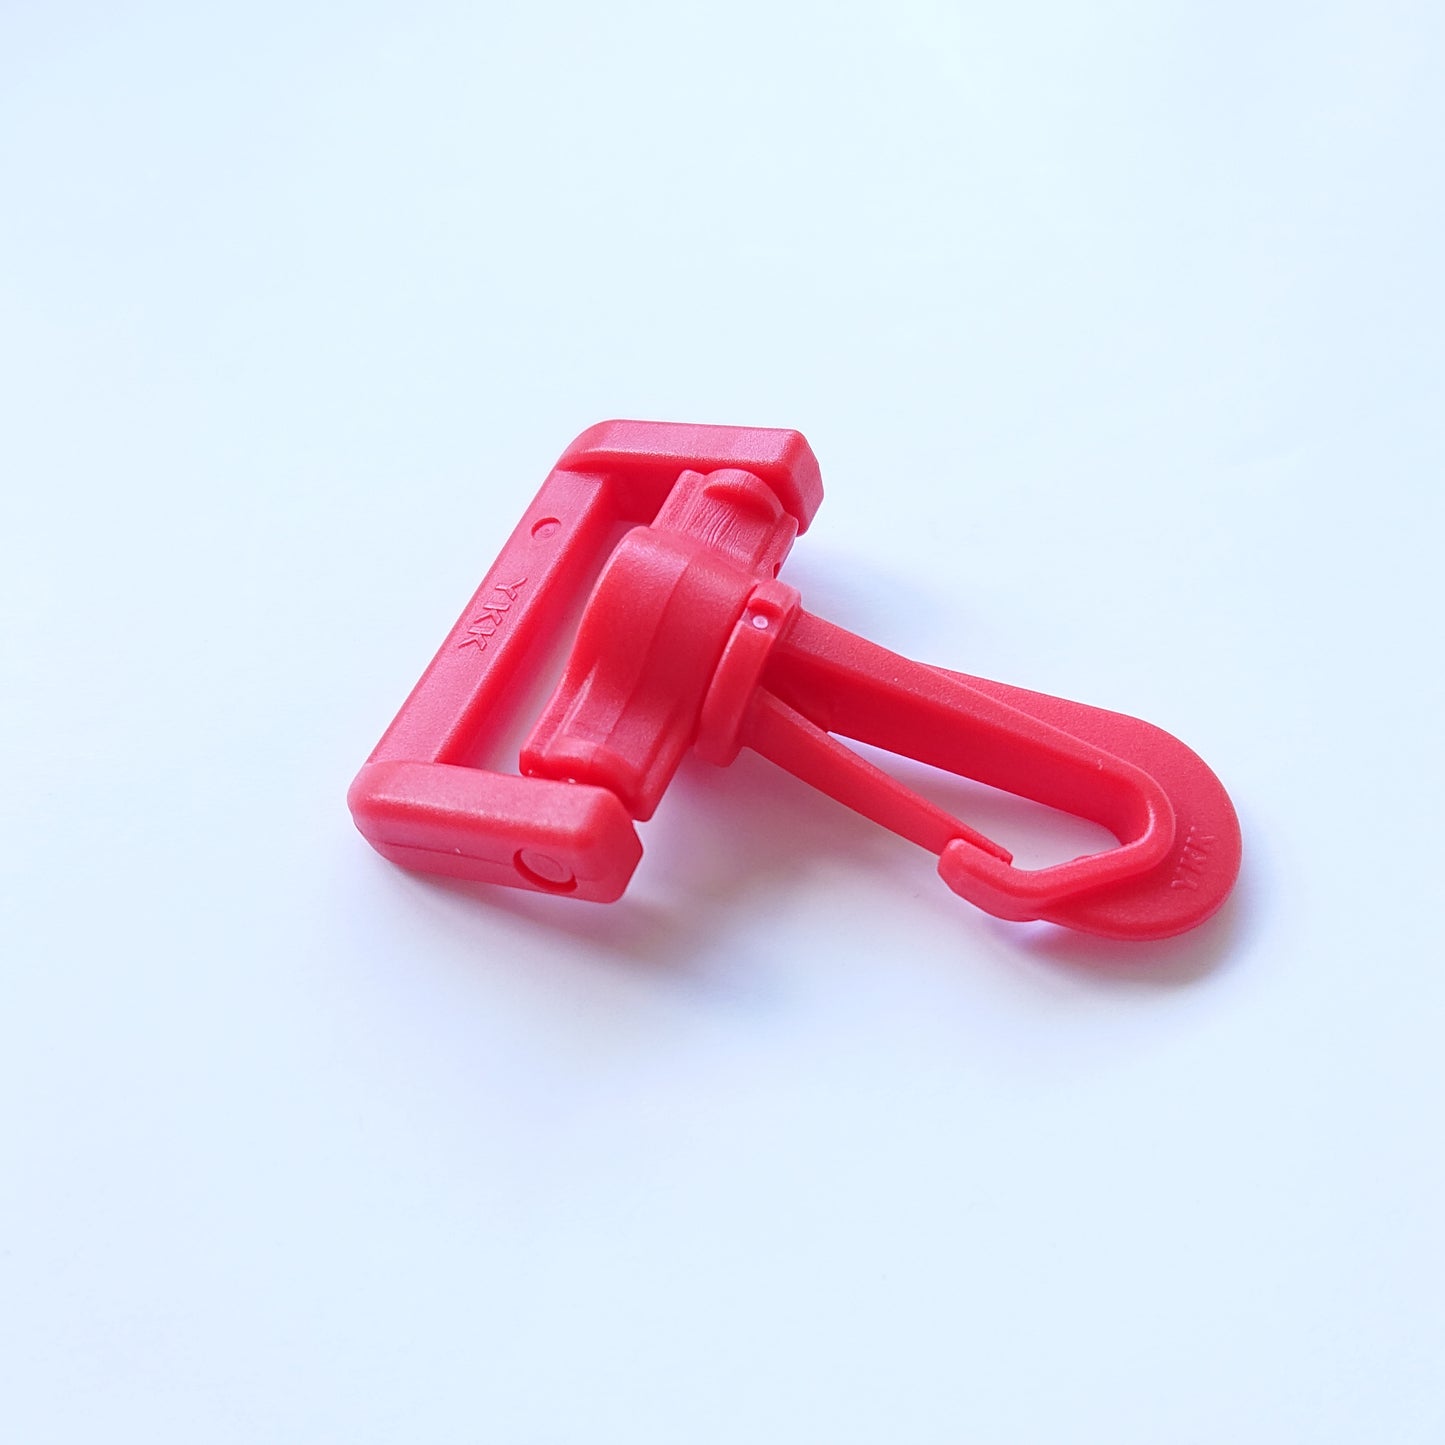 YKK - Swirl Snap Hook  (For 1" /25mm wide webbing) -- Red